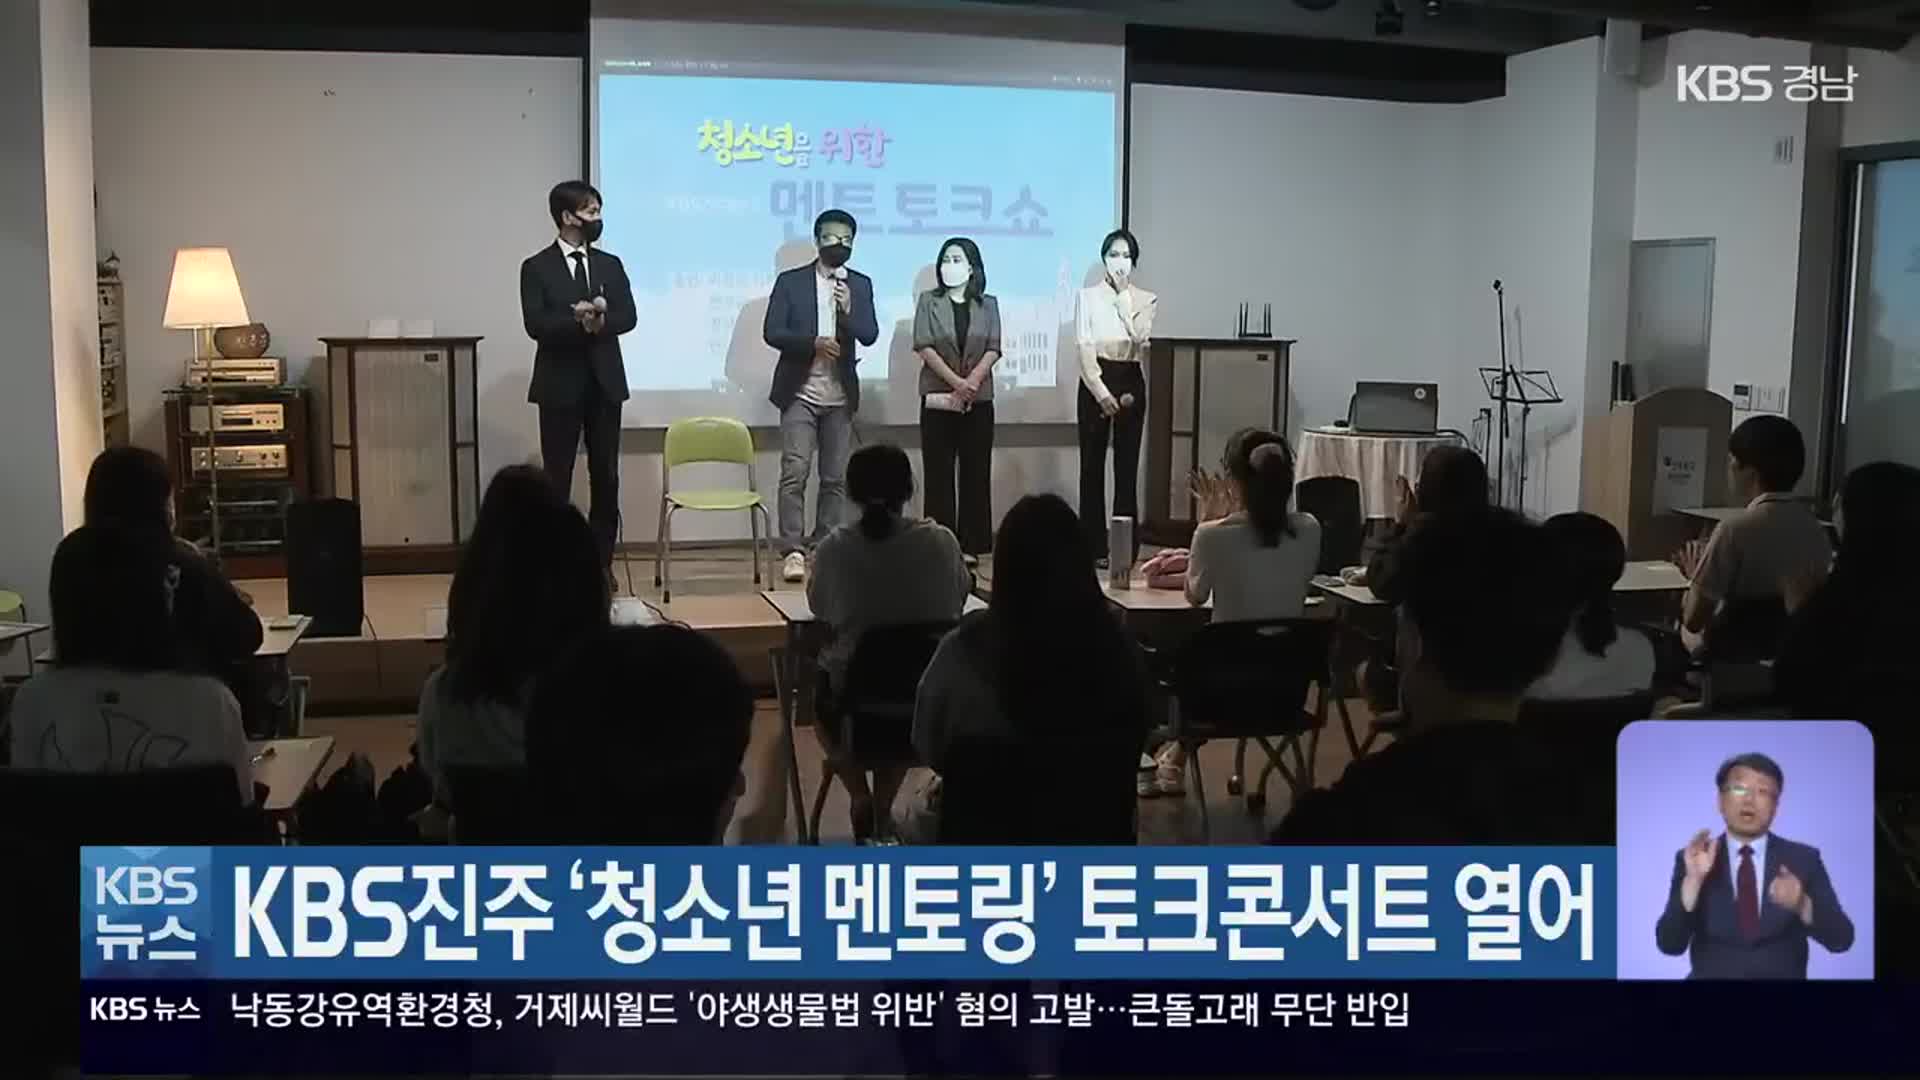 KBS진주 ‘청소년 멘토링’ 토크콘서트 열어